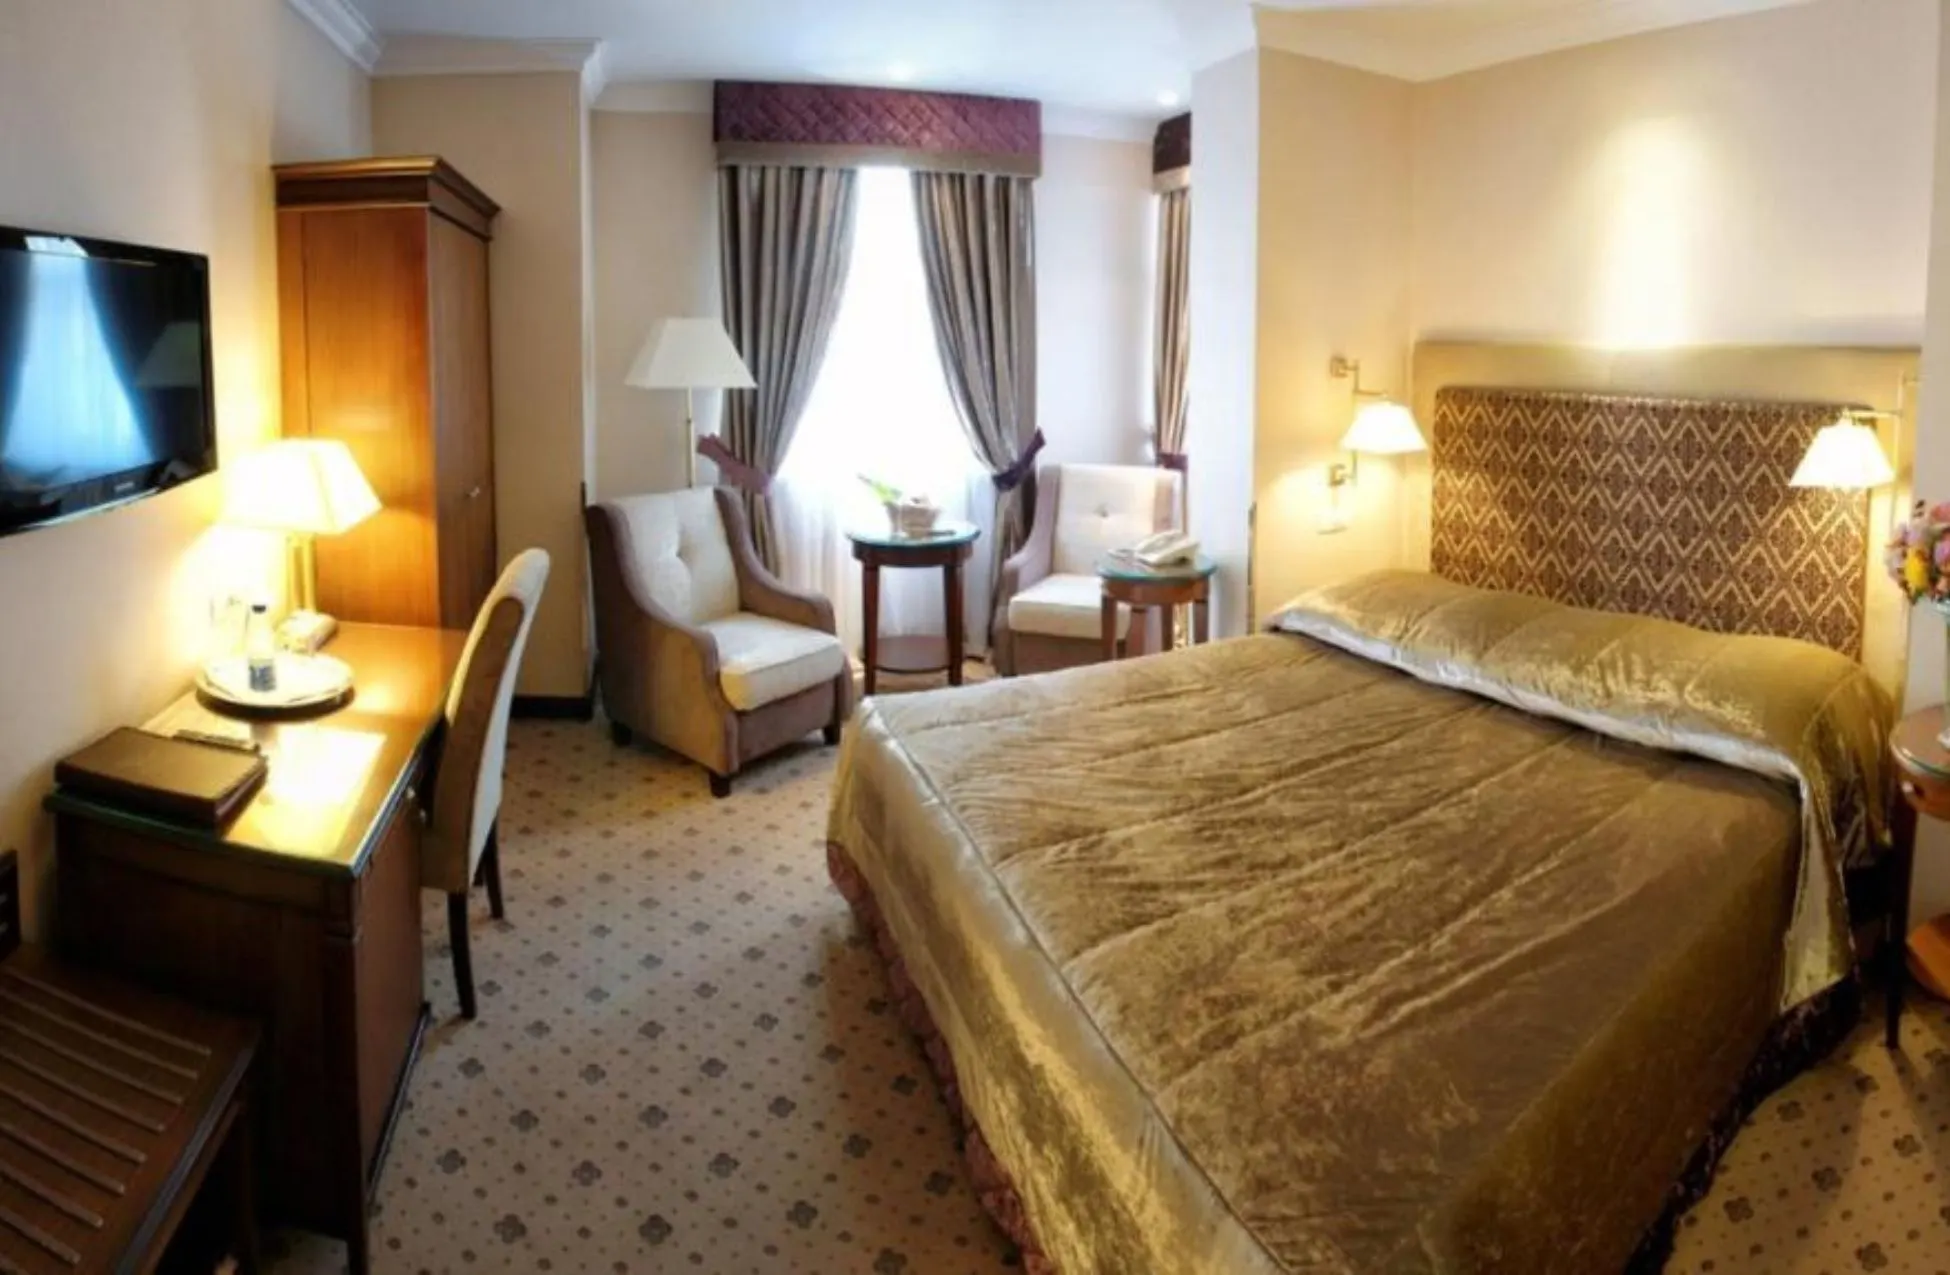 Swiss Hotel - Best Hotels In Lviv